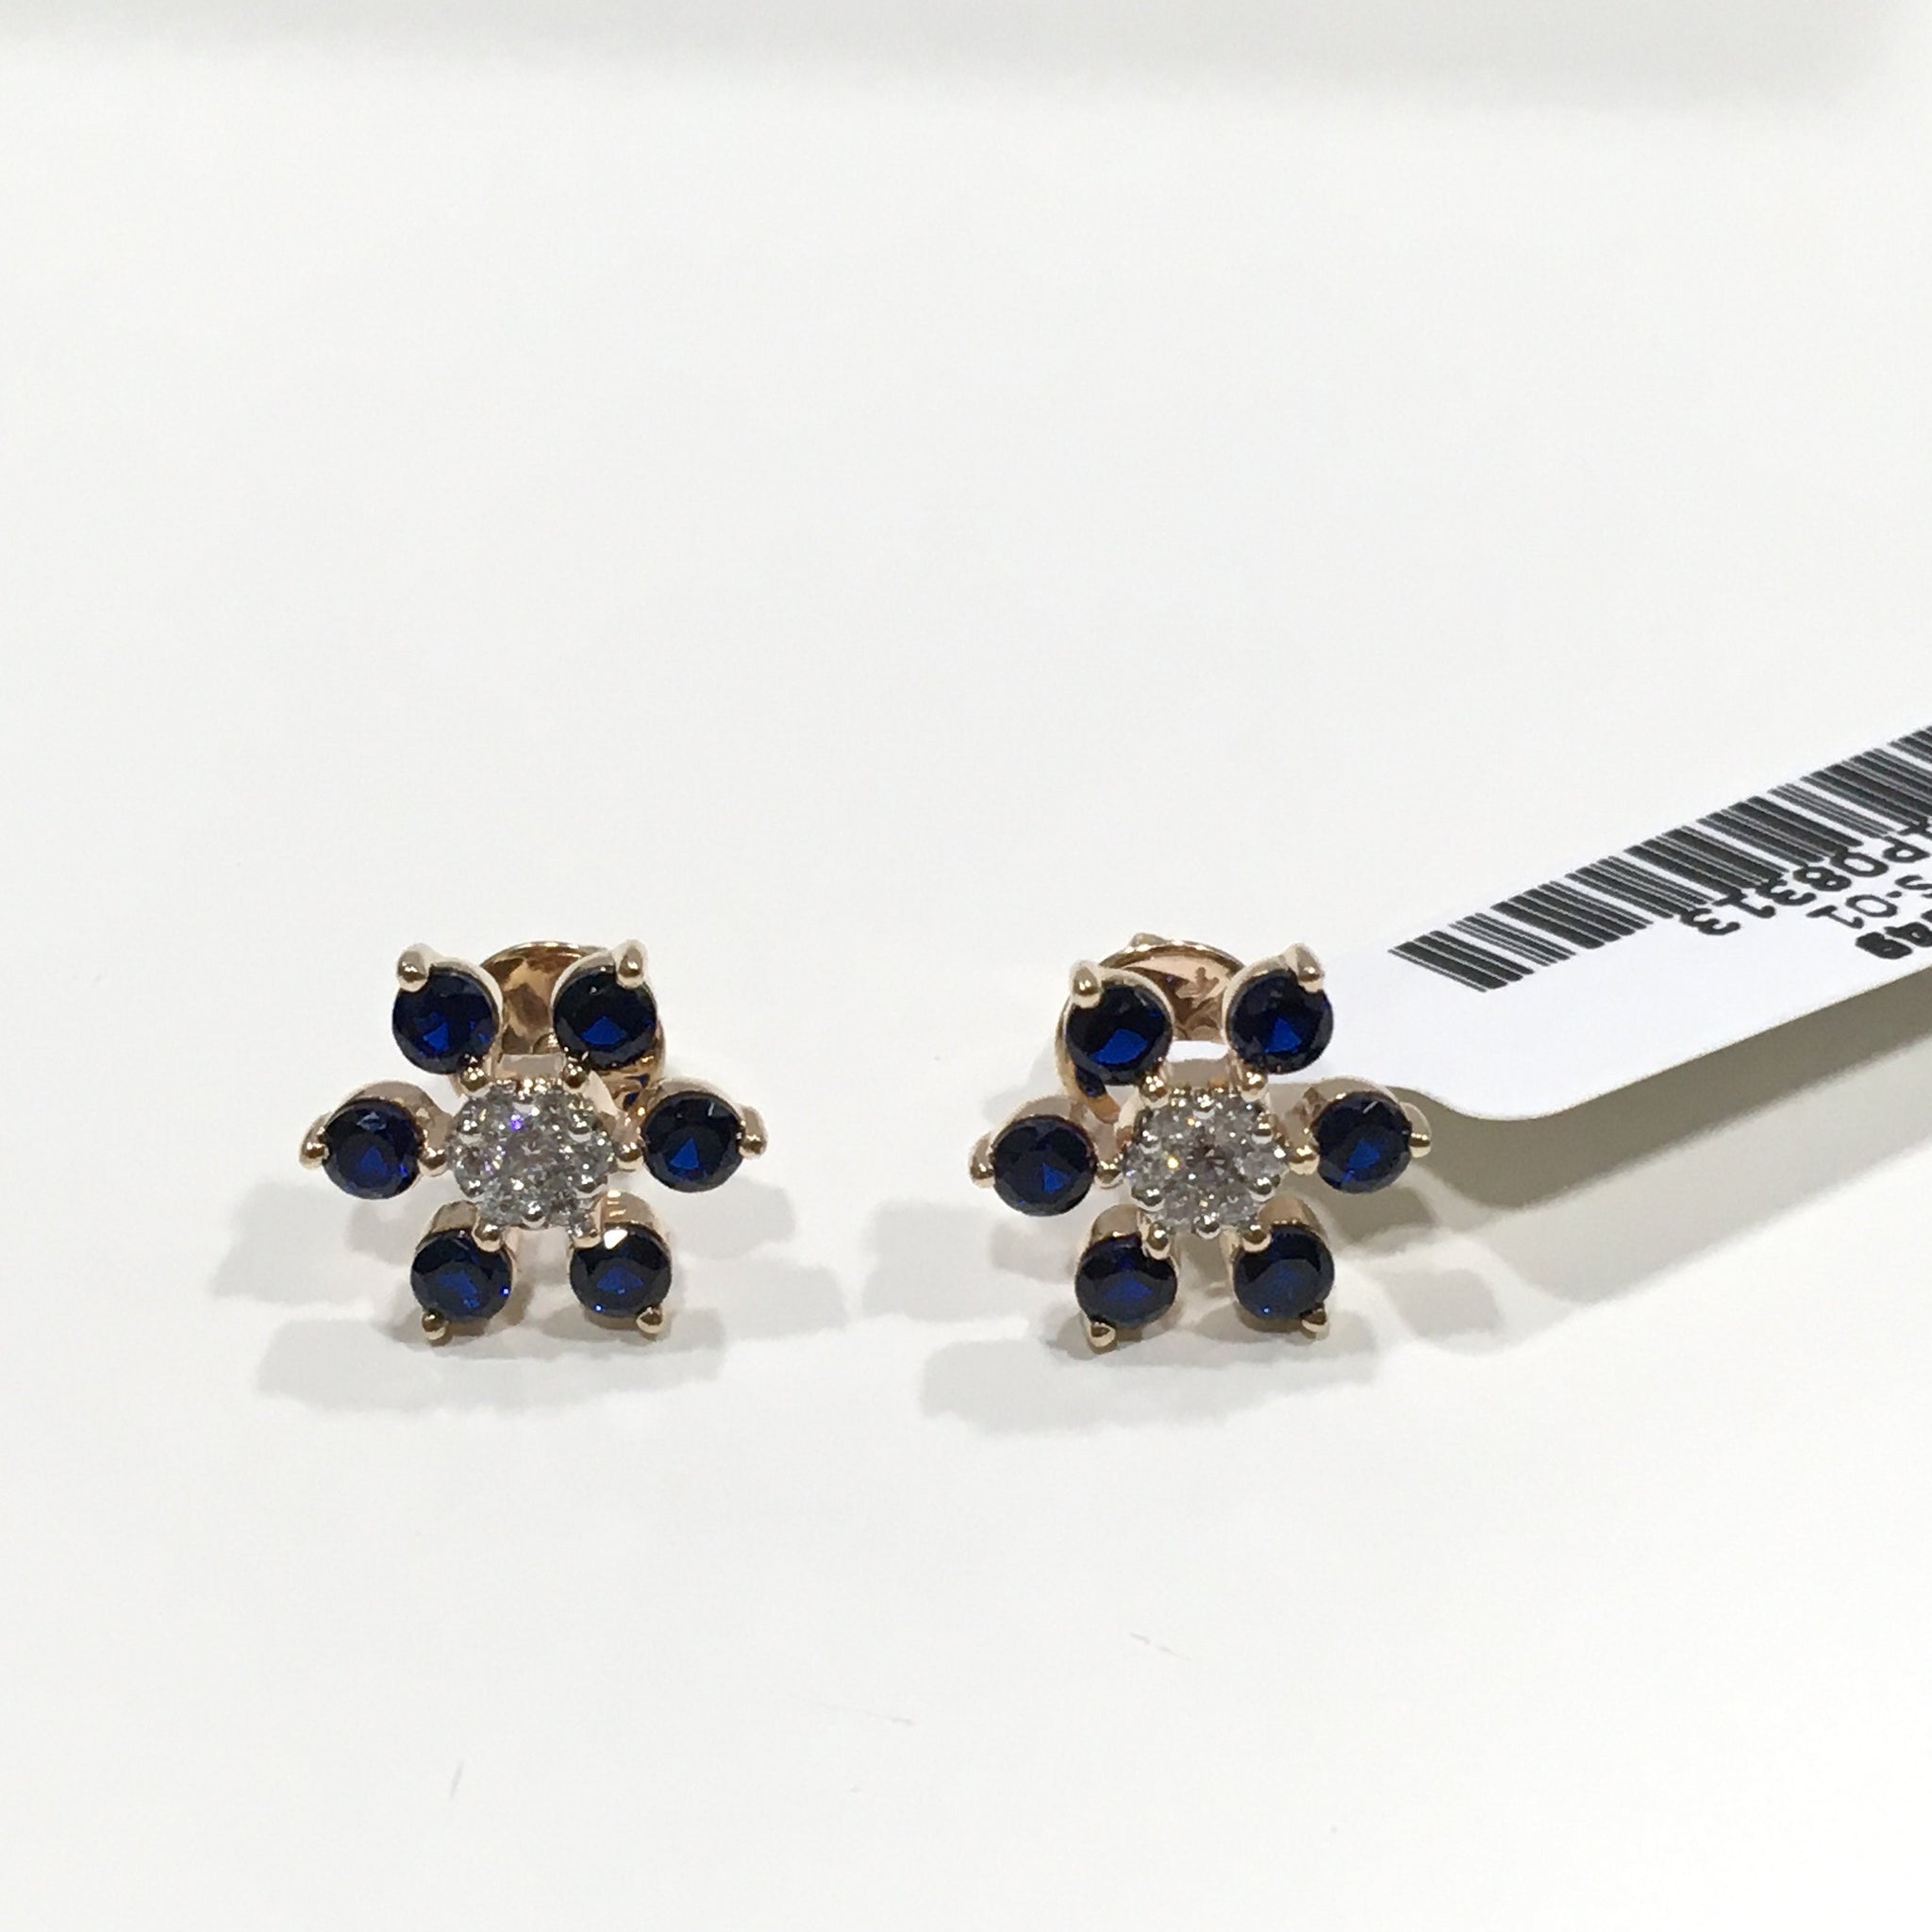 Boucle d'oreille en grappe de diamants avec pierre précieuse / Boucle d'oreille florale en diamant en or 14K avec saphir bleu / Boucle d'oreille fleur en diamant avec pierre précieuse